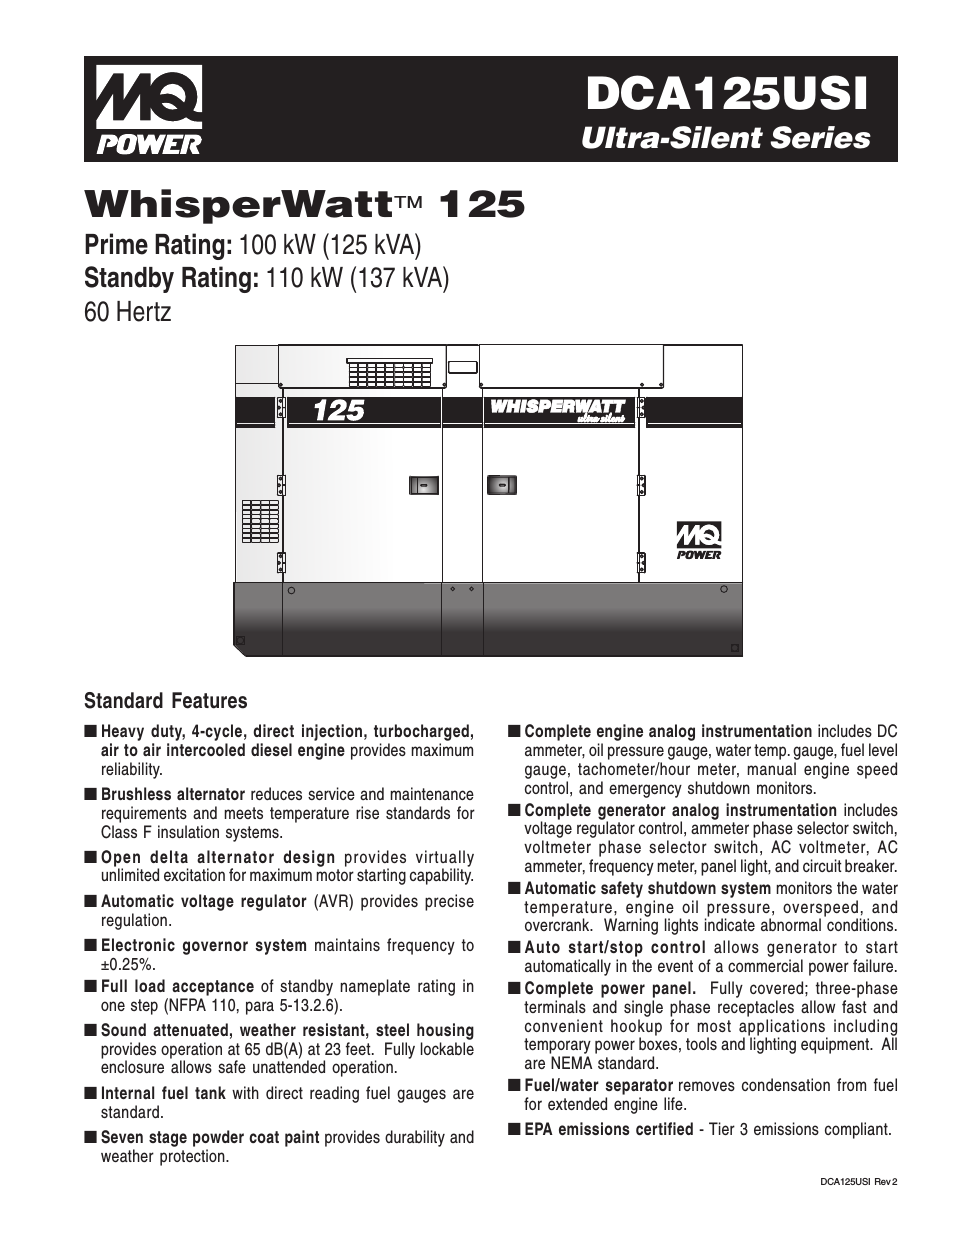 Ultra-Silent Series WhisperWattTM DCA125USI